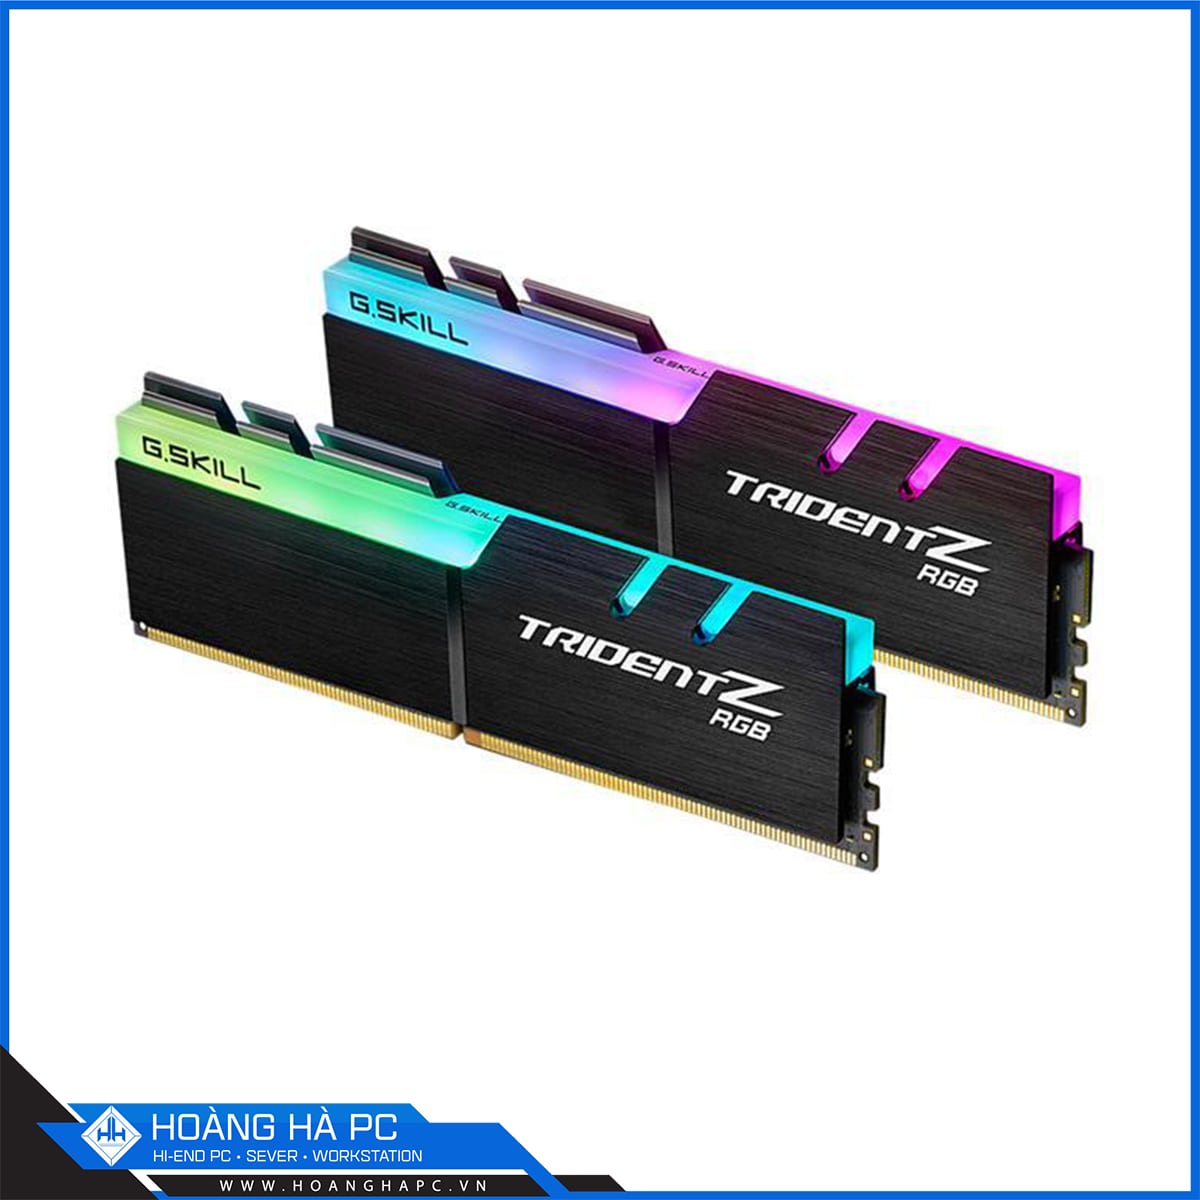 Bộ nhớ RAM G.Skill TRIDENT Z RGB - 32GB (16GBx2) DDR4 3000MHz-F4-3000C16D-32GTZR